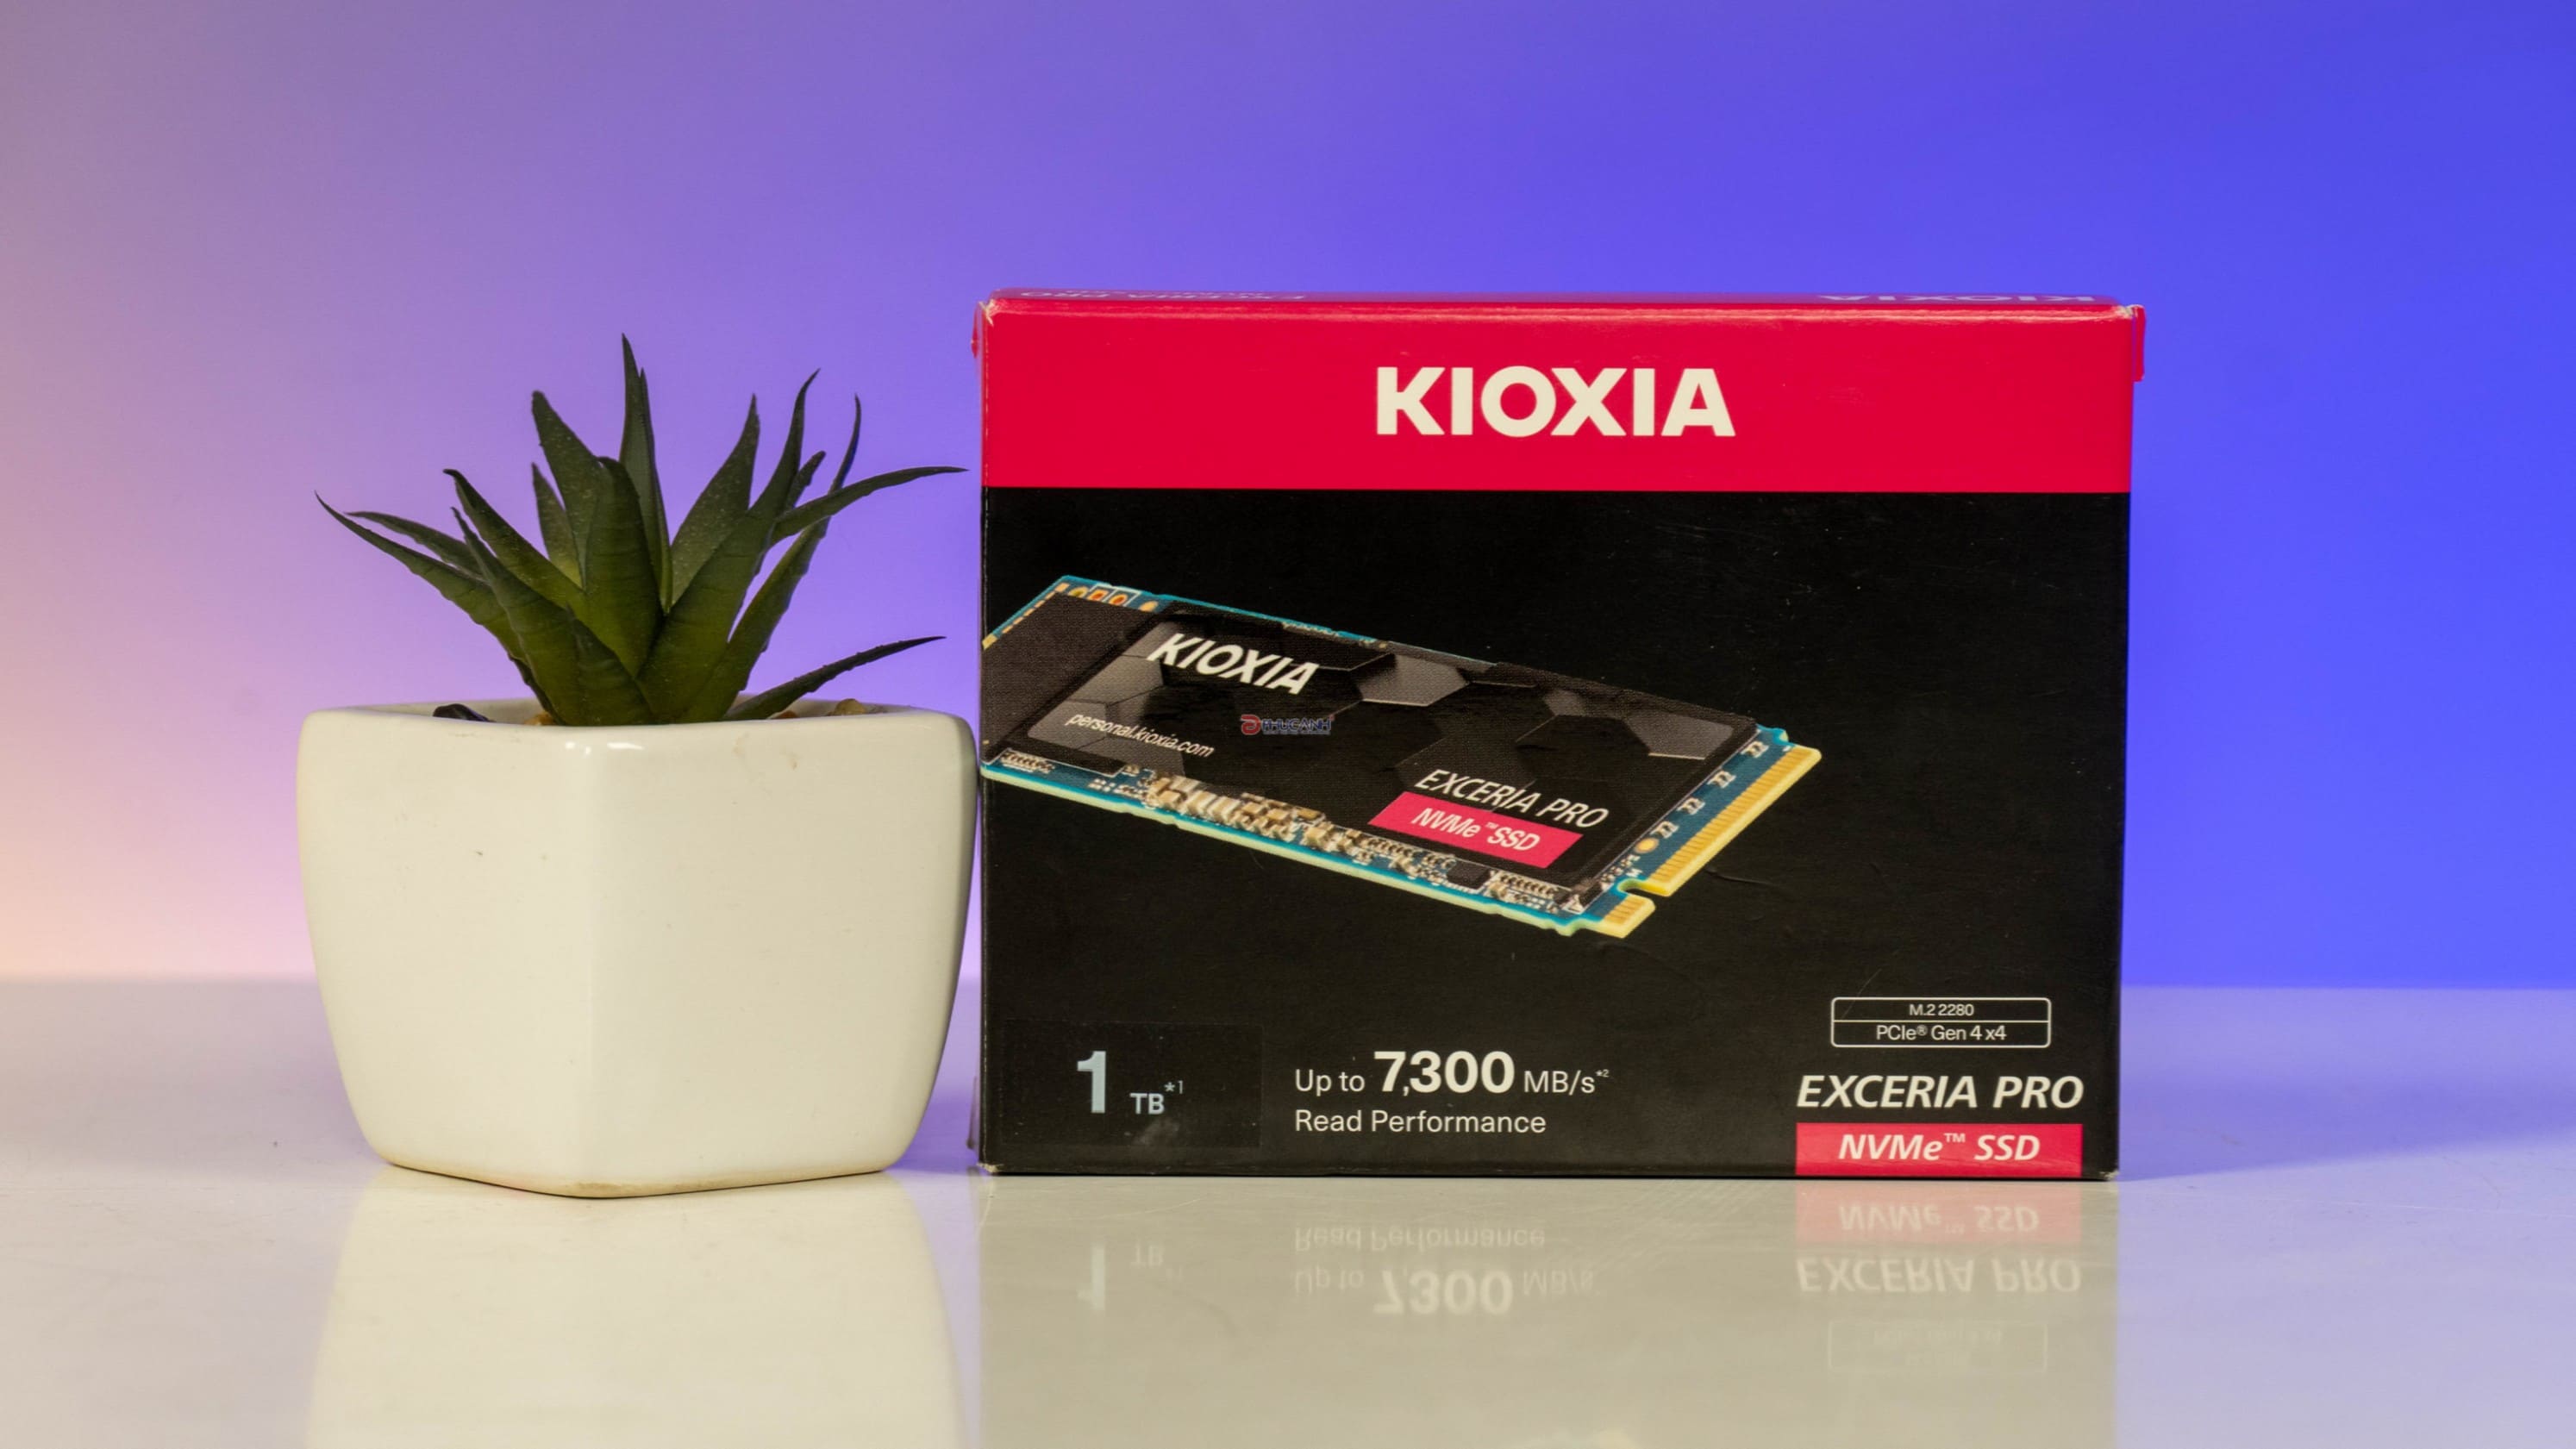 Đánh giá SSD KIOXIA EXCERIA PRO - Khẳng định sức mạnh công nghệ Nhật Bản